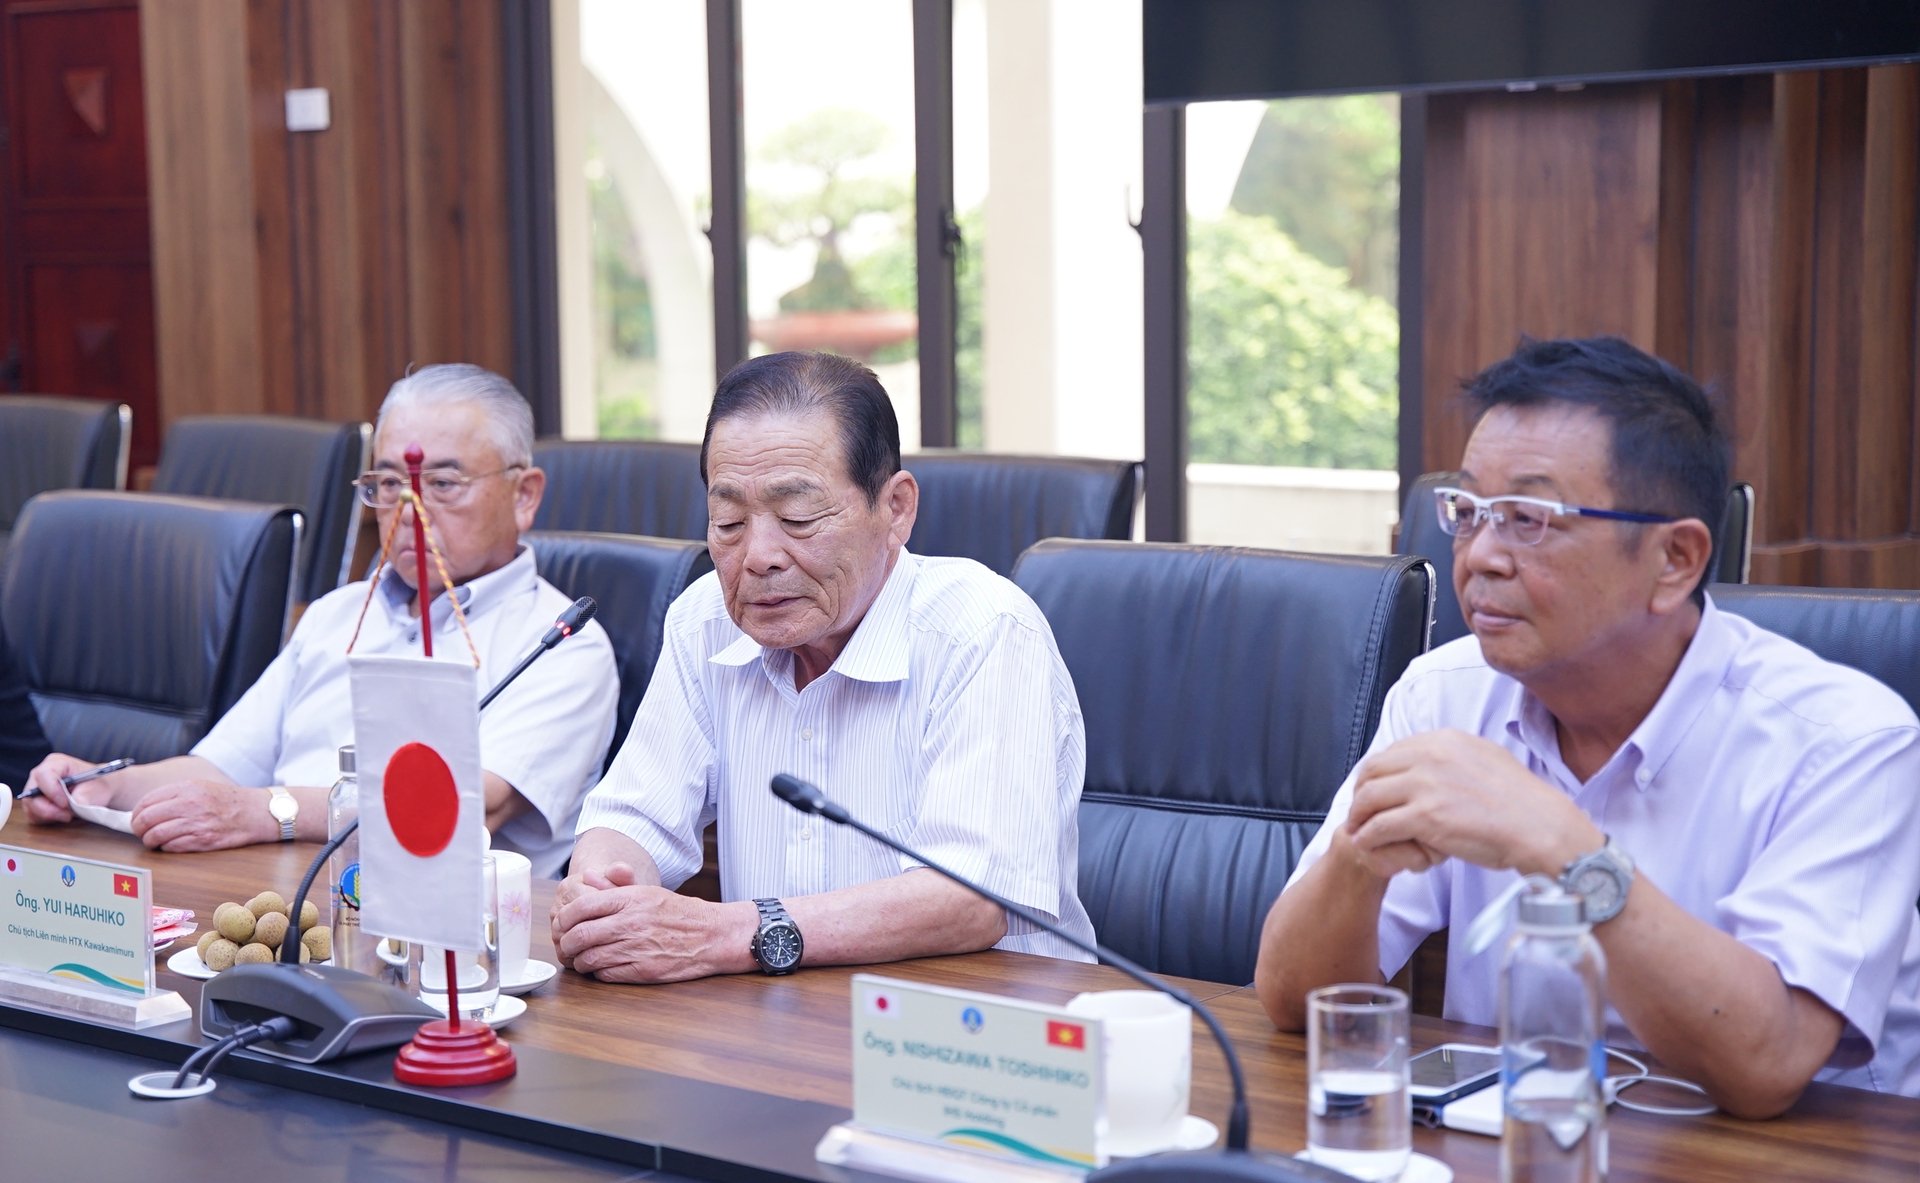 Ông Yui Haruhiko, Chủ tịch Liên minh HTX Kawakamimura (ngồi giữa) bày tỏ mong muốn tiếp đón các cán bộ khuyến nông Việt Nam sang Nhật Bản làm việc. 